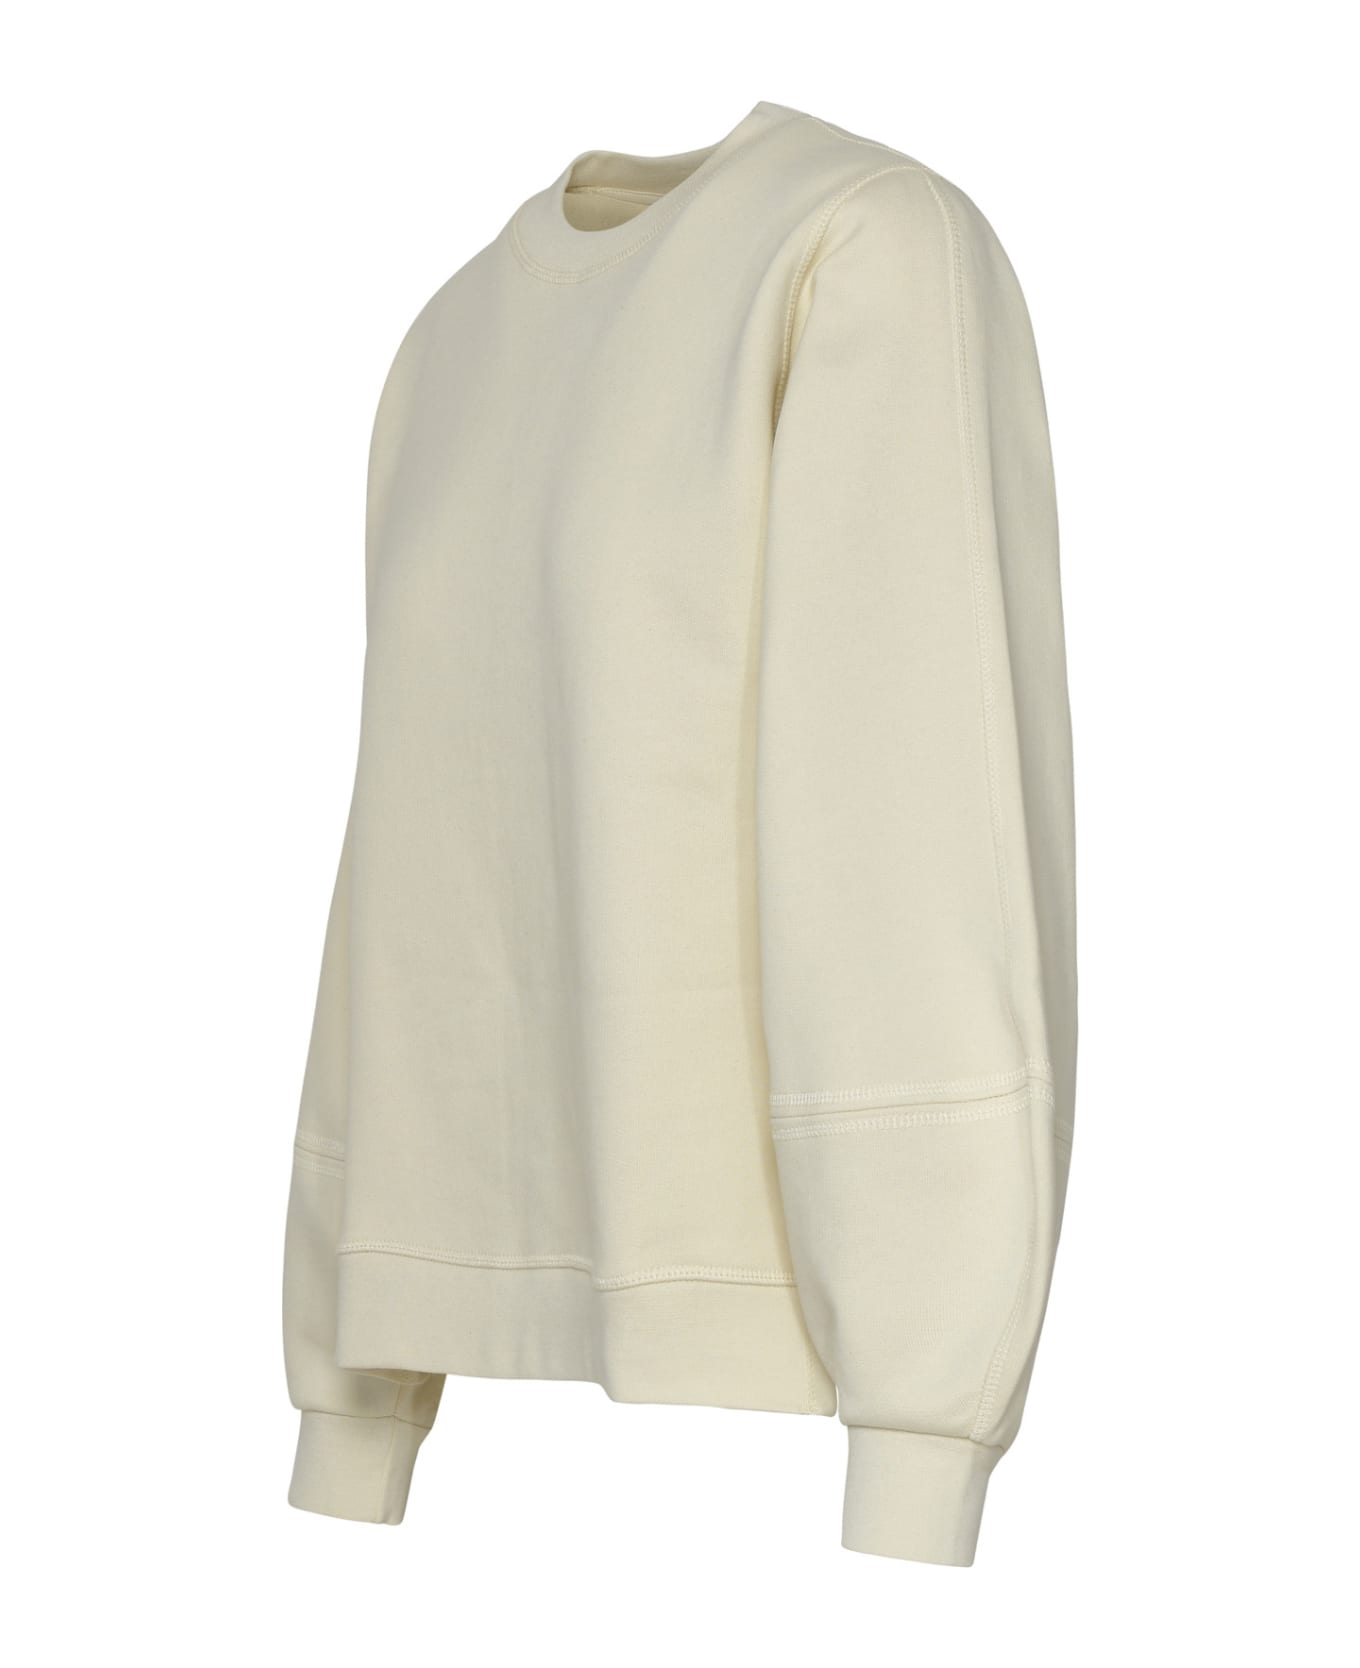 Ganni Cream Cotton Blend Sweatshirt - Ivory